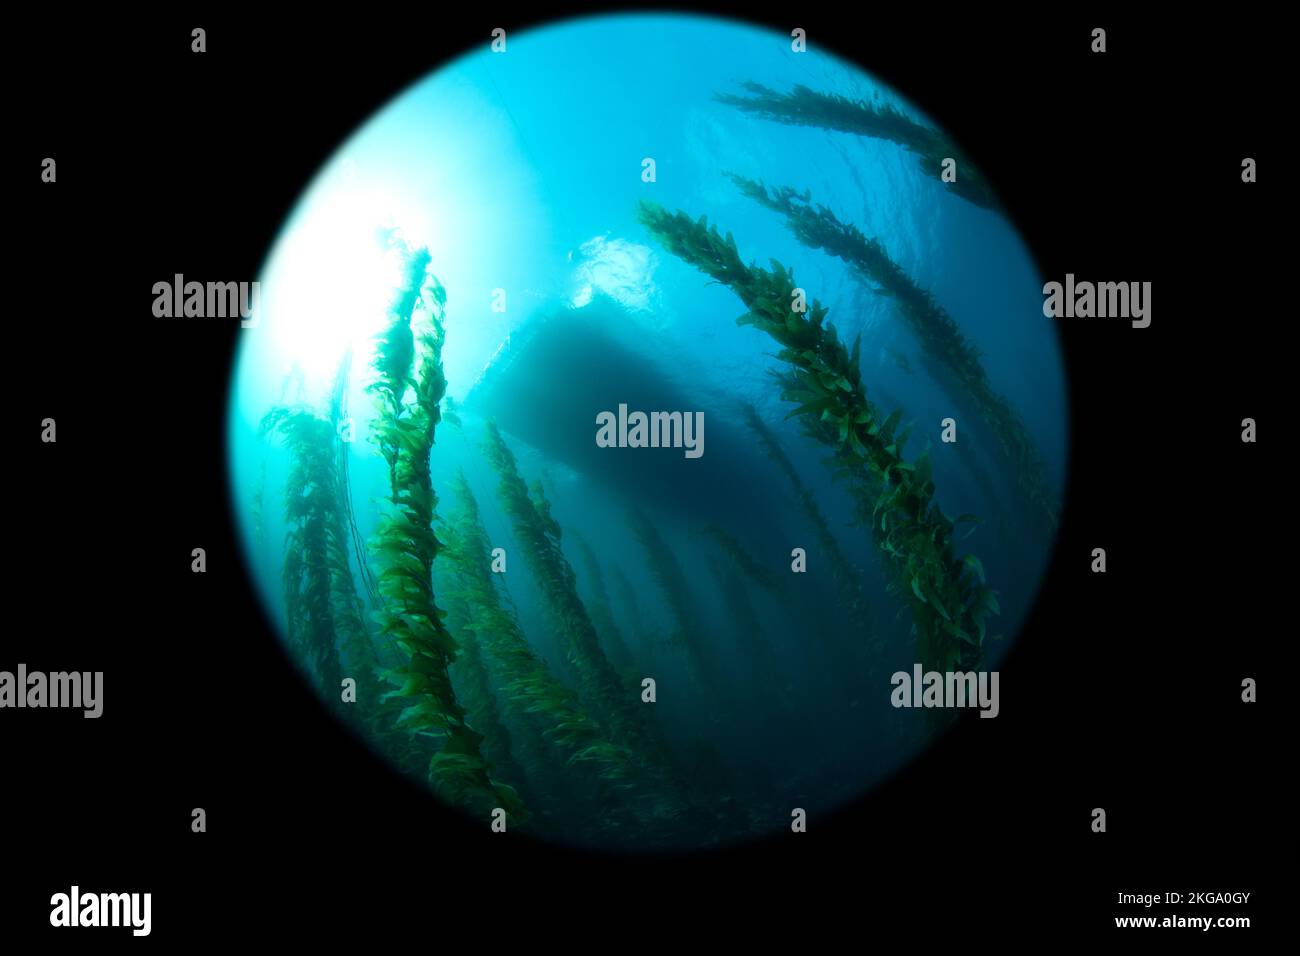 Une grande image circulaire prise dans un lit de varech en regardant le bateau de plongée flottant au-dessus d'un magnifique lit de varech lors d'une plongée sous-marine matinale. Banque D'Images